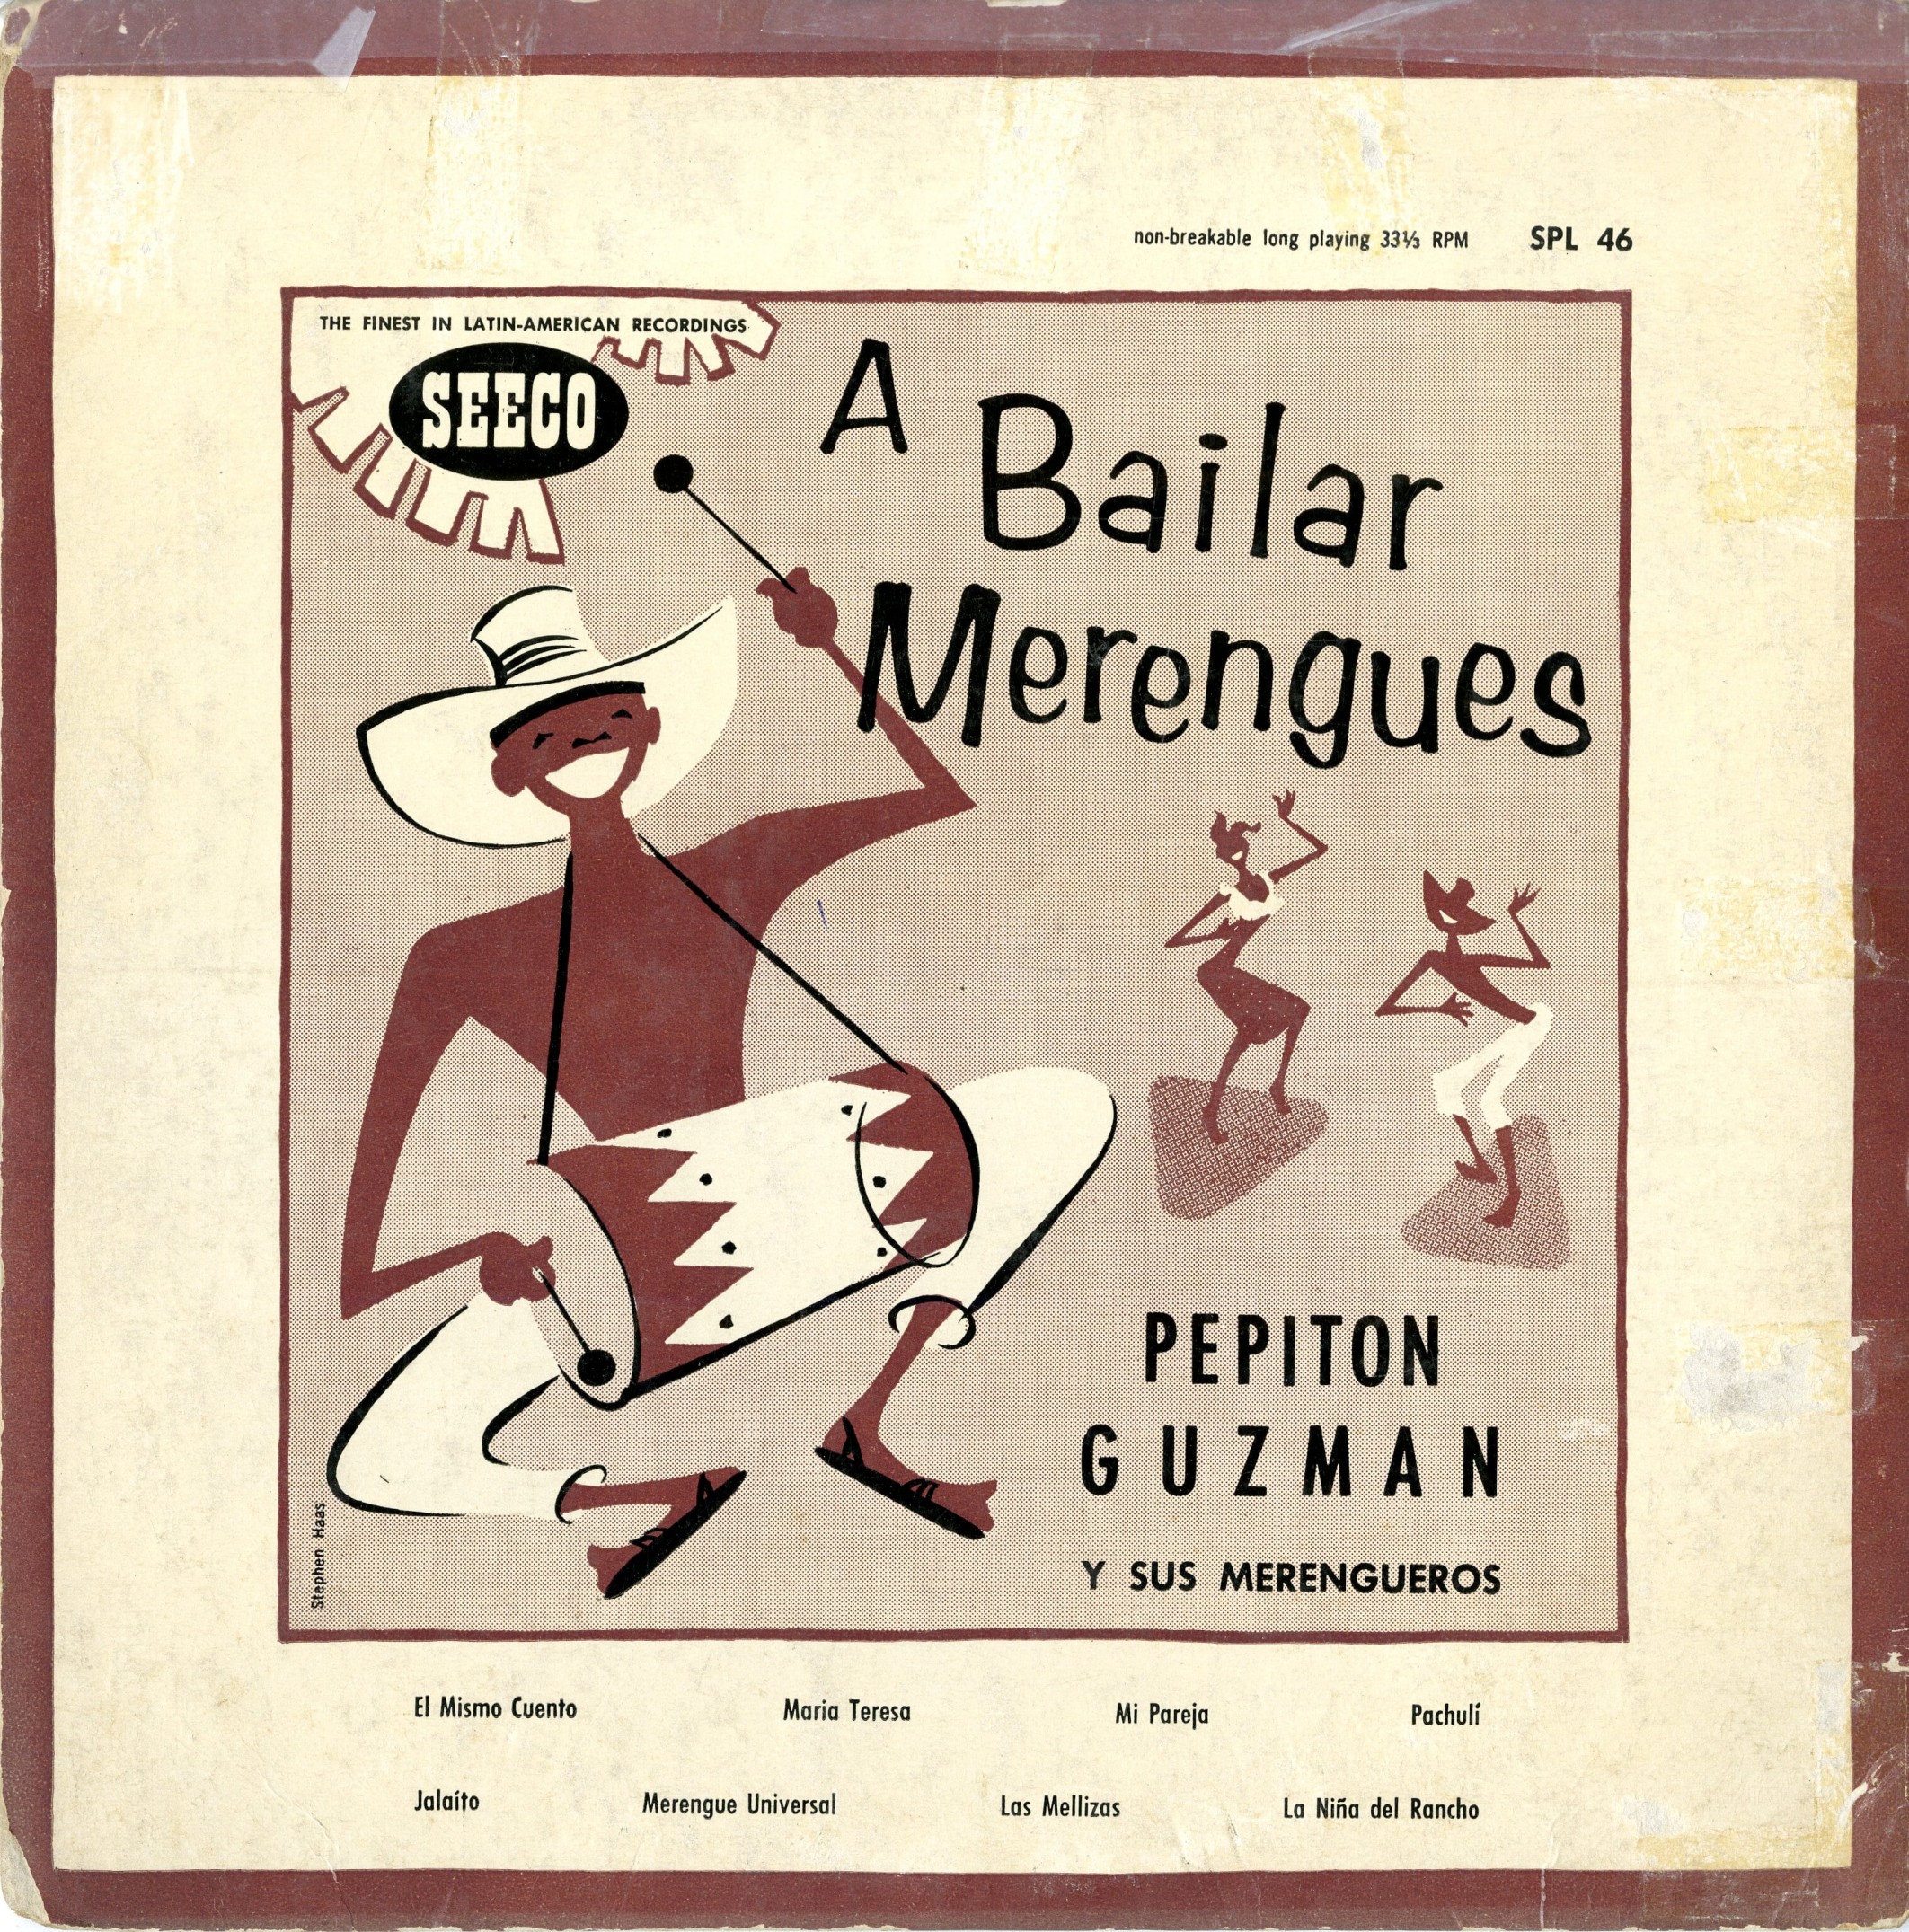 A Bailar Merengues, LP album cover, 1953